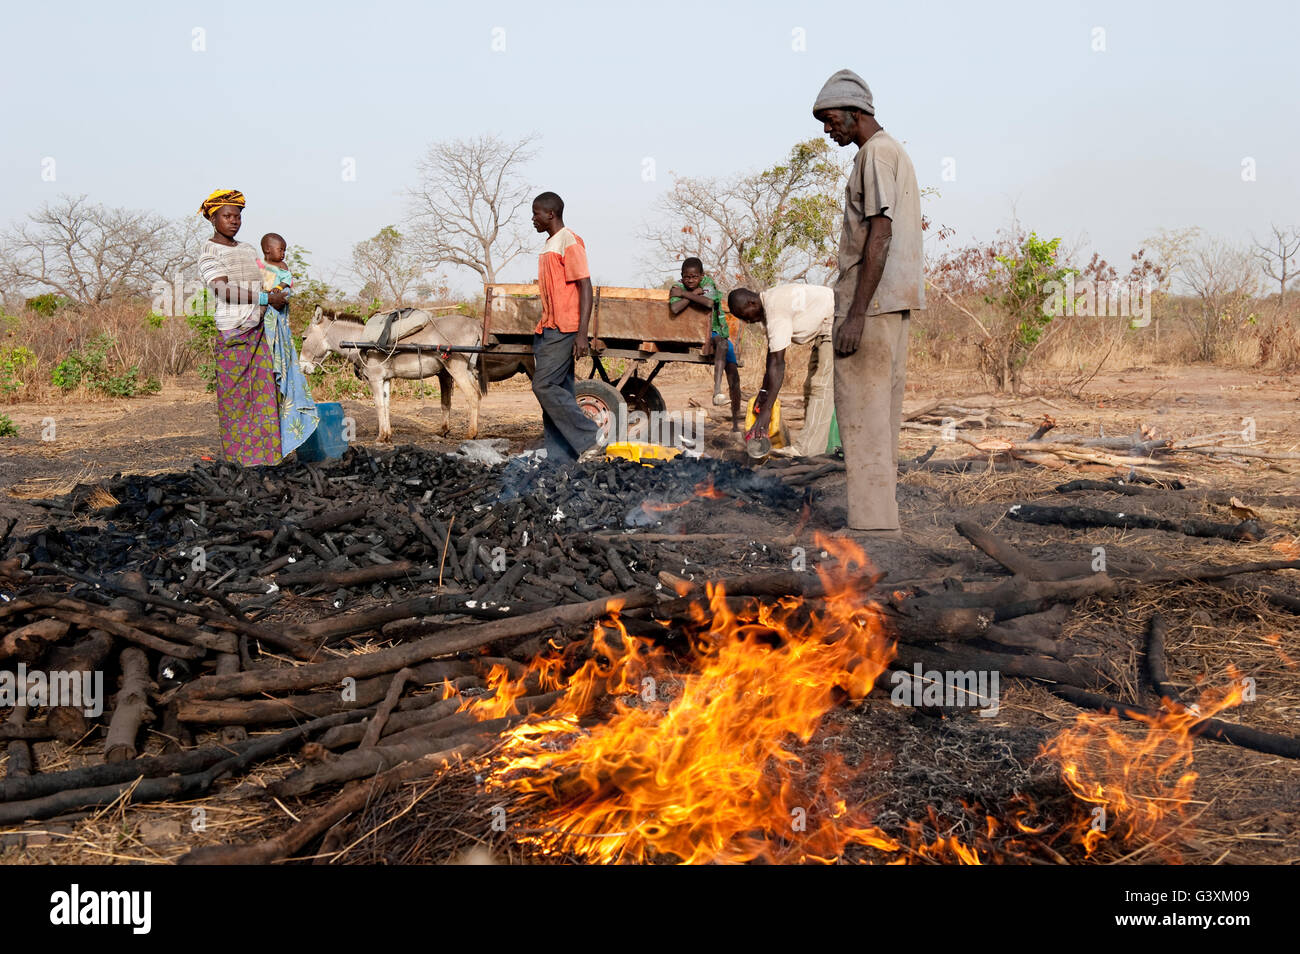 MALI, Sahel, sur la production de charbon de bois de Bush est une incidence sur l'environnement de cette région à sec, le charbon est l'énergie utilisée pour la cuisine Banque D'Images